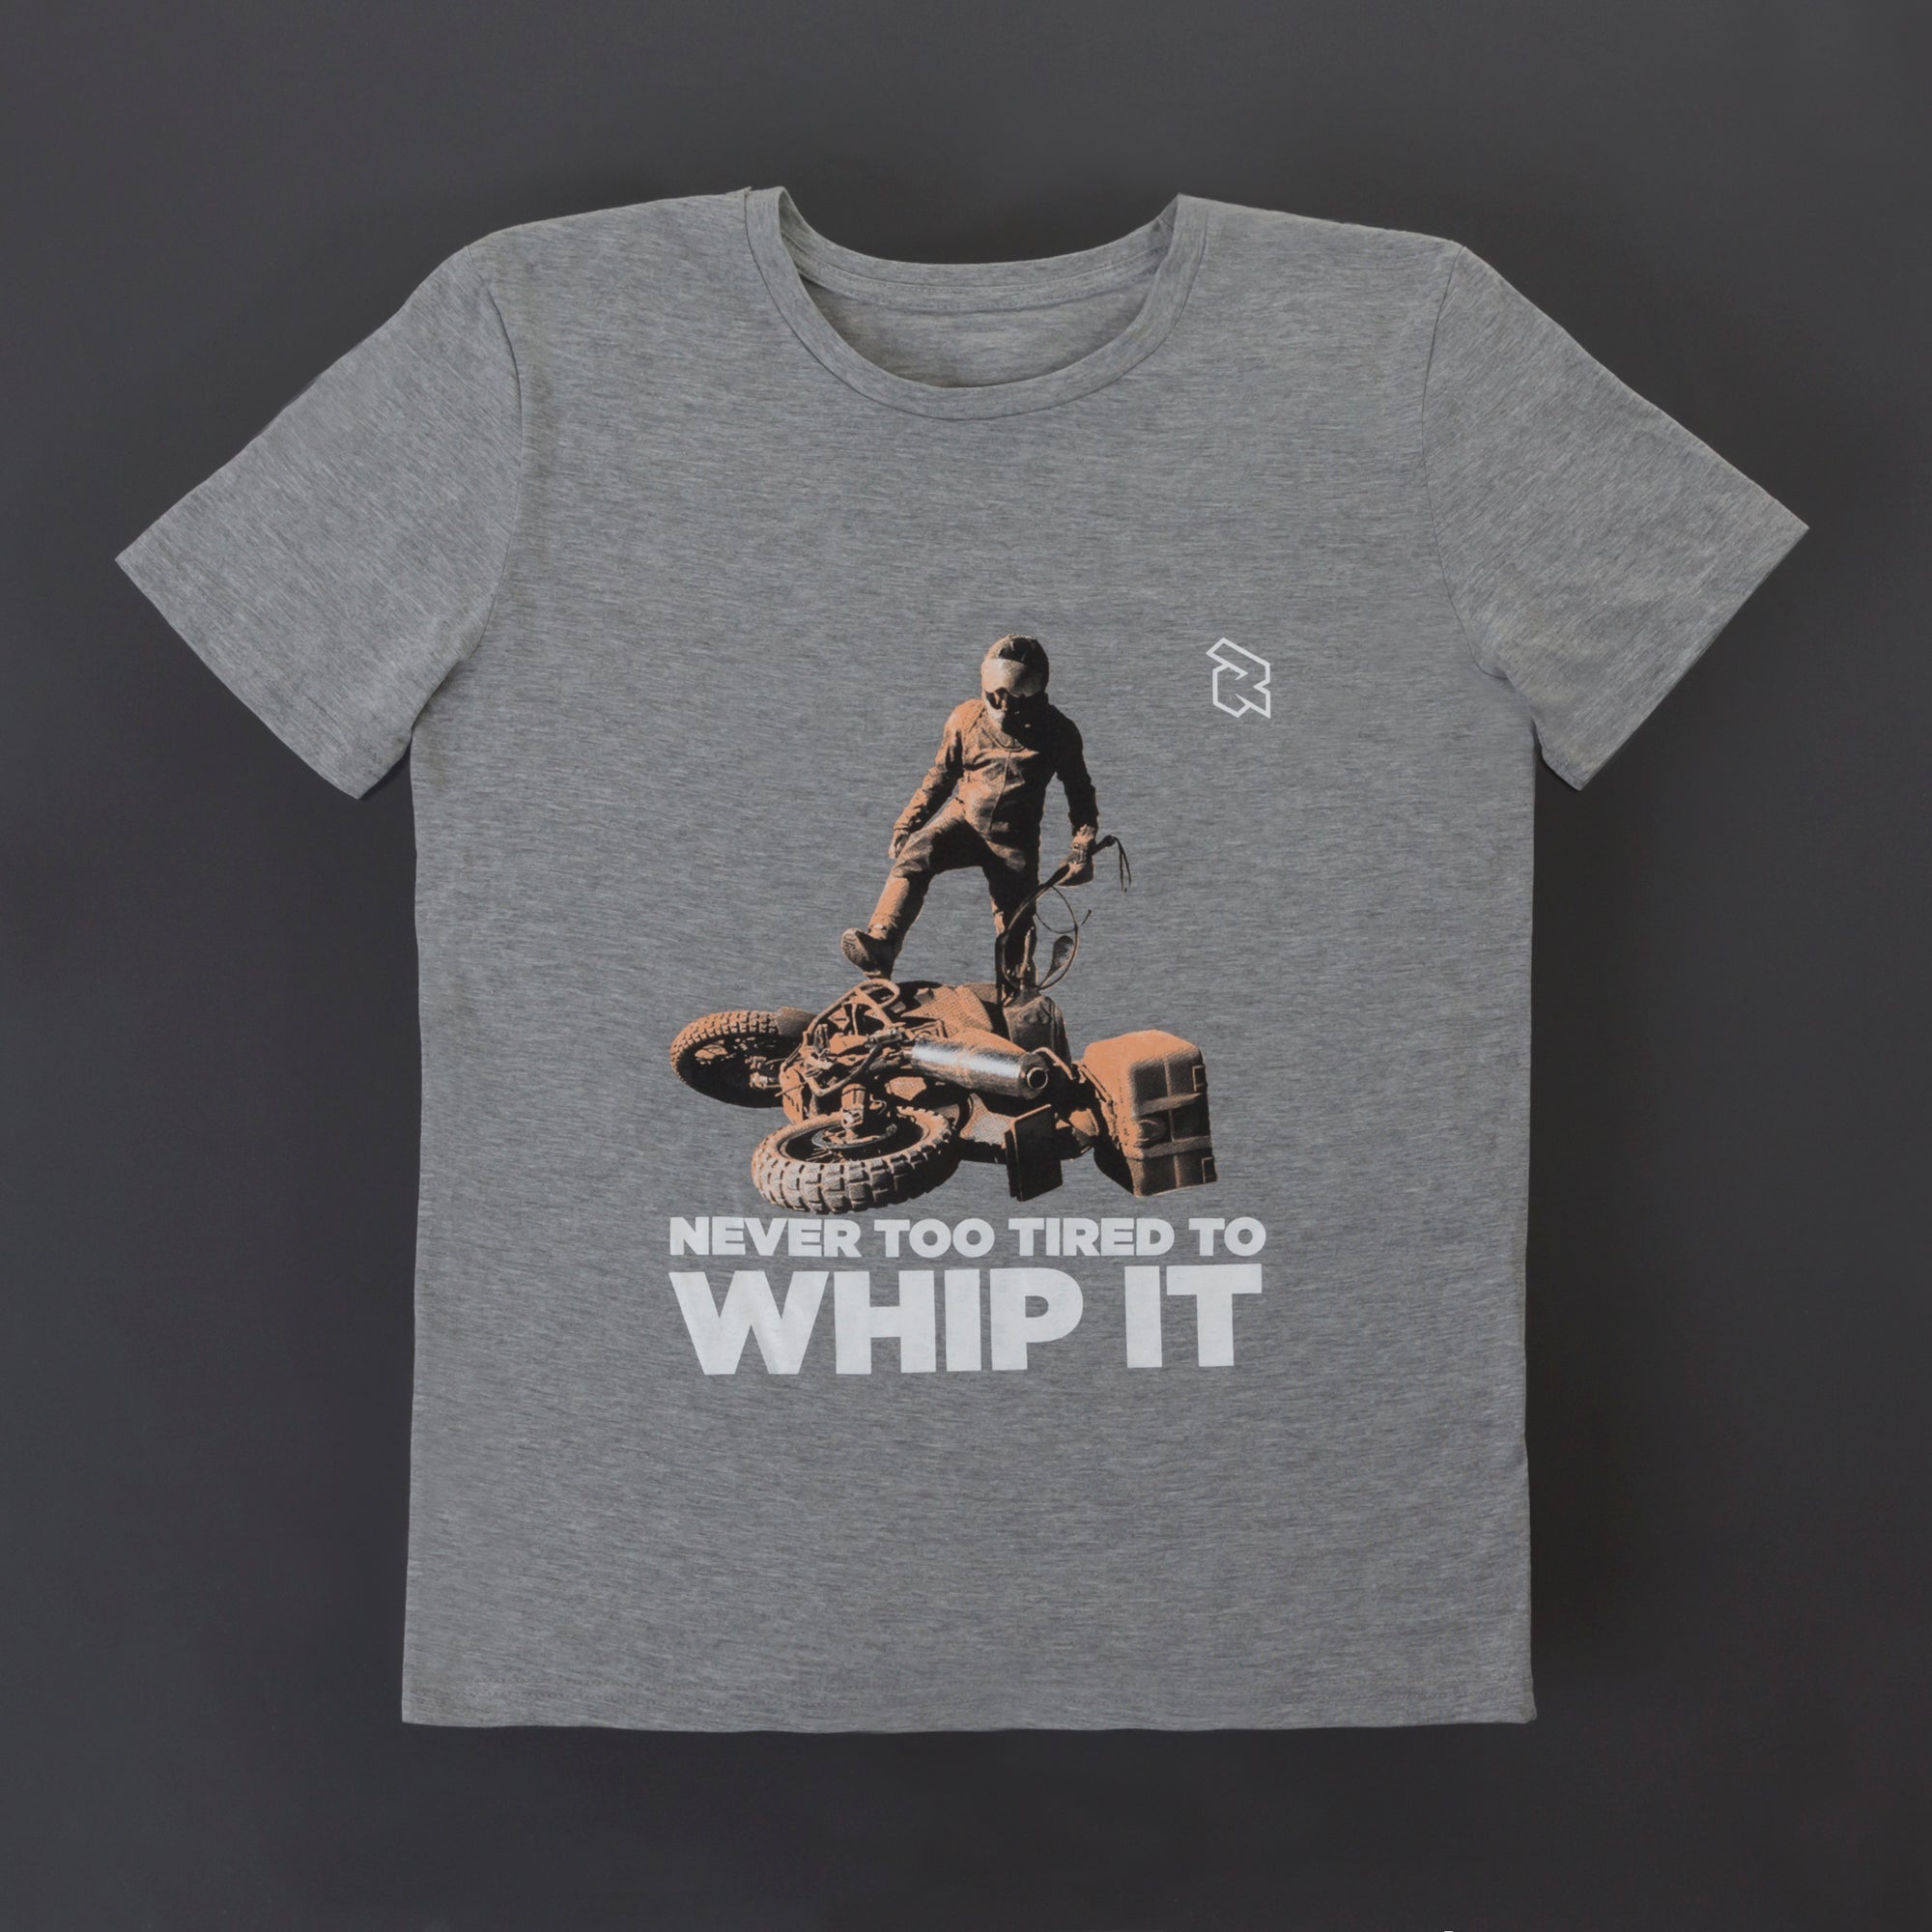 Whip It T-shirt